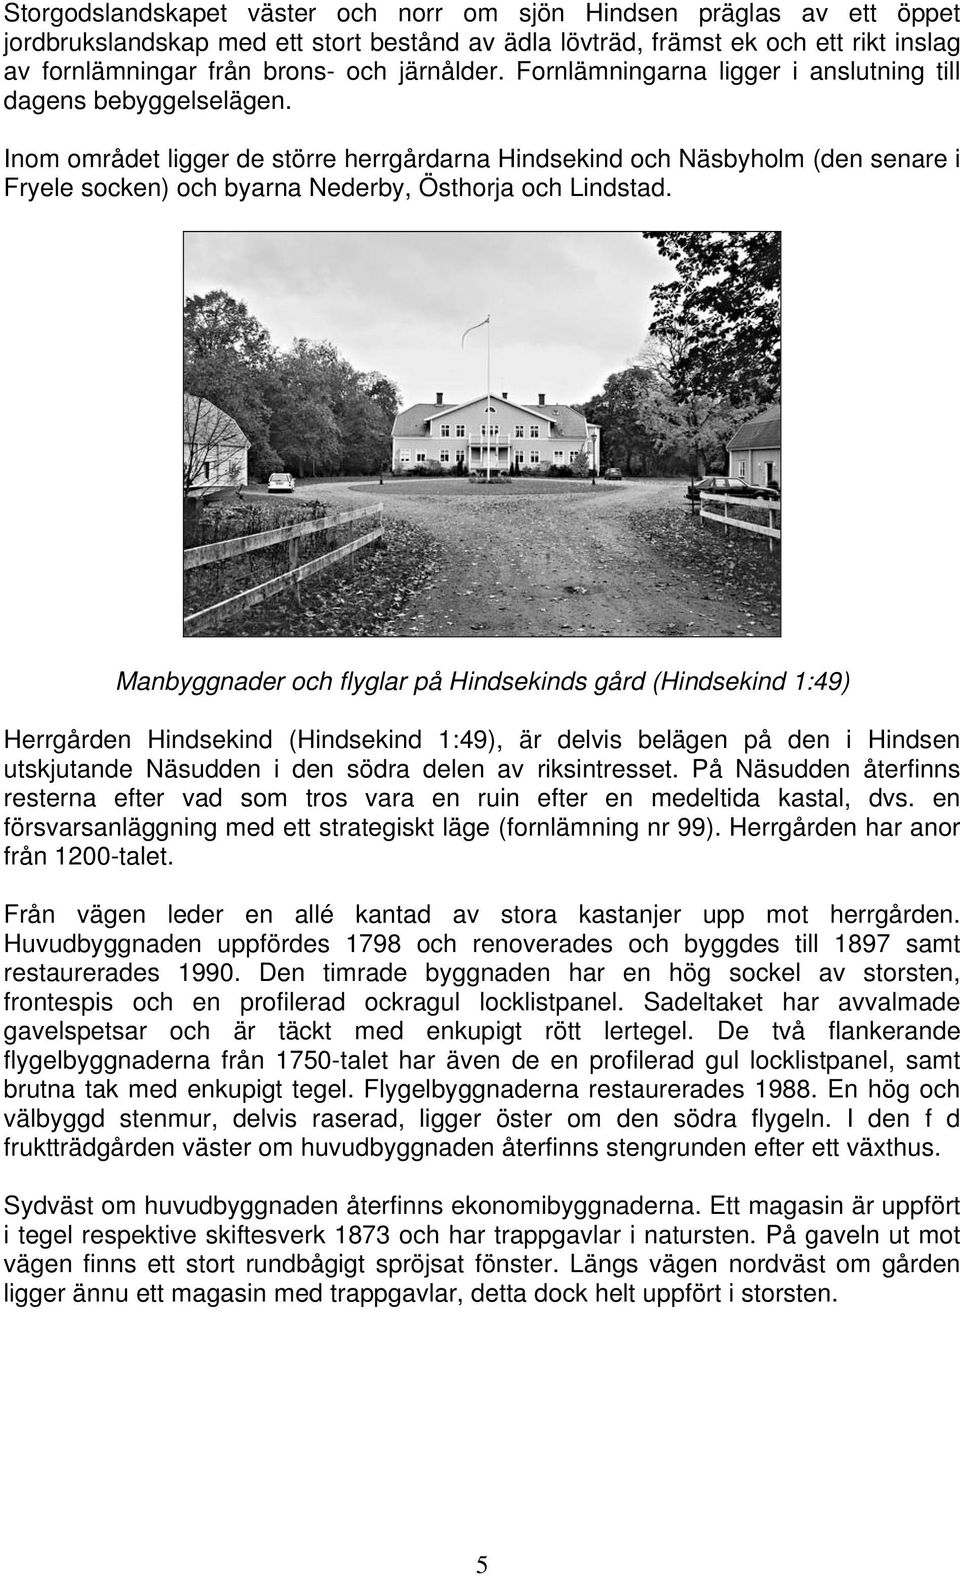 Inom området ligger de större herrgårdarna Hindsekind och Näsbyholm (den senare i Fryele socken) och byarna Nederby, Östhorja och Lindstad.